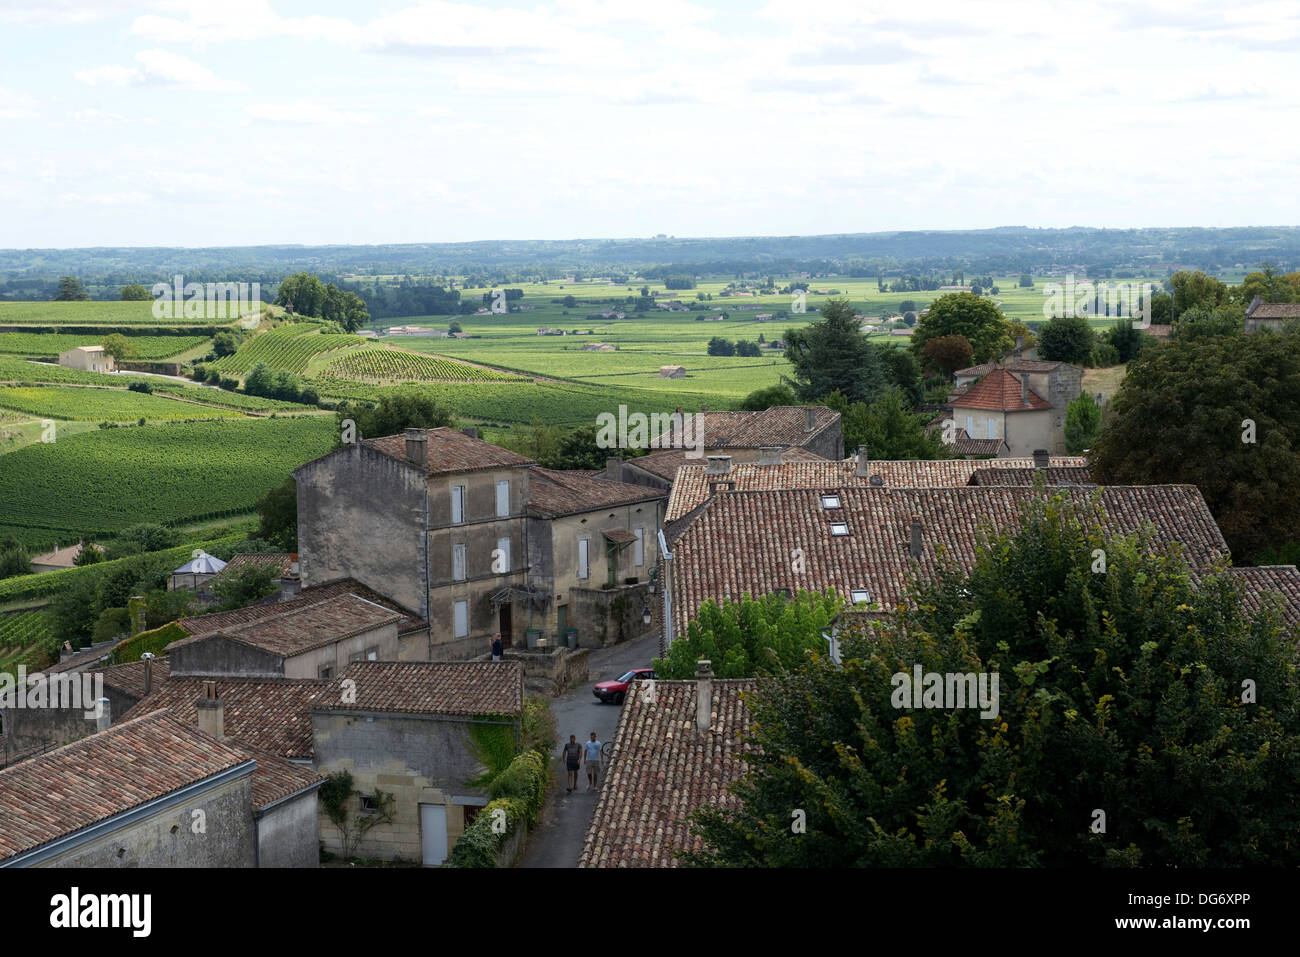 Saint Emilion et vignobles dans la région de Bordeaux célèbre pour ses bons vins et vignobles, un site du patrimoine mondial Banque D'Images